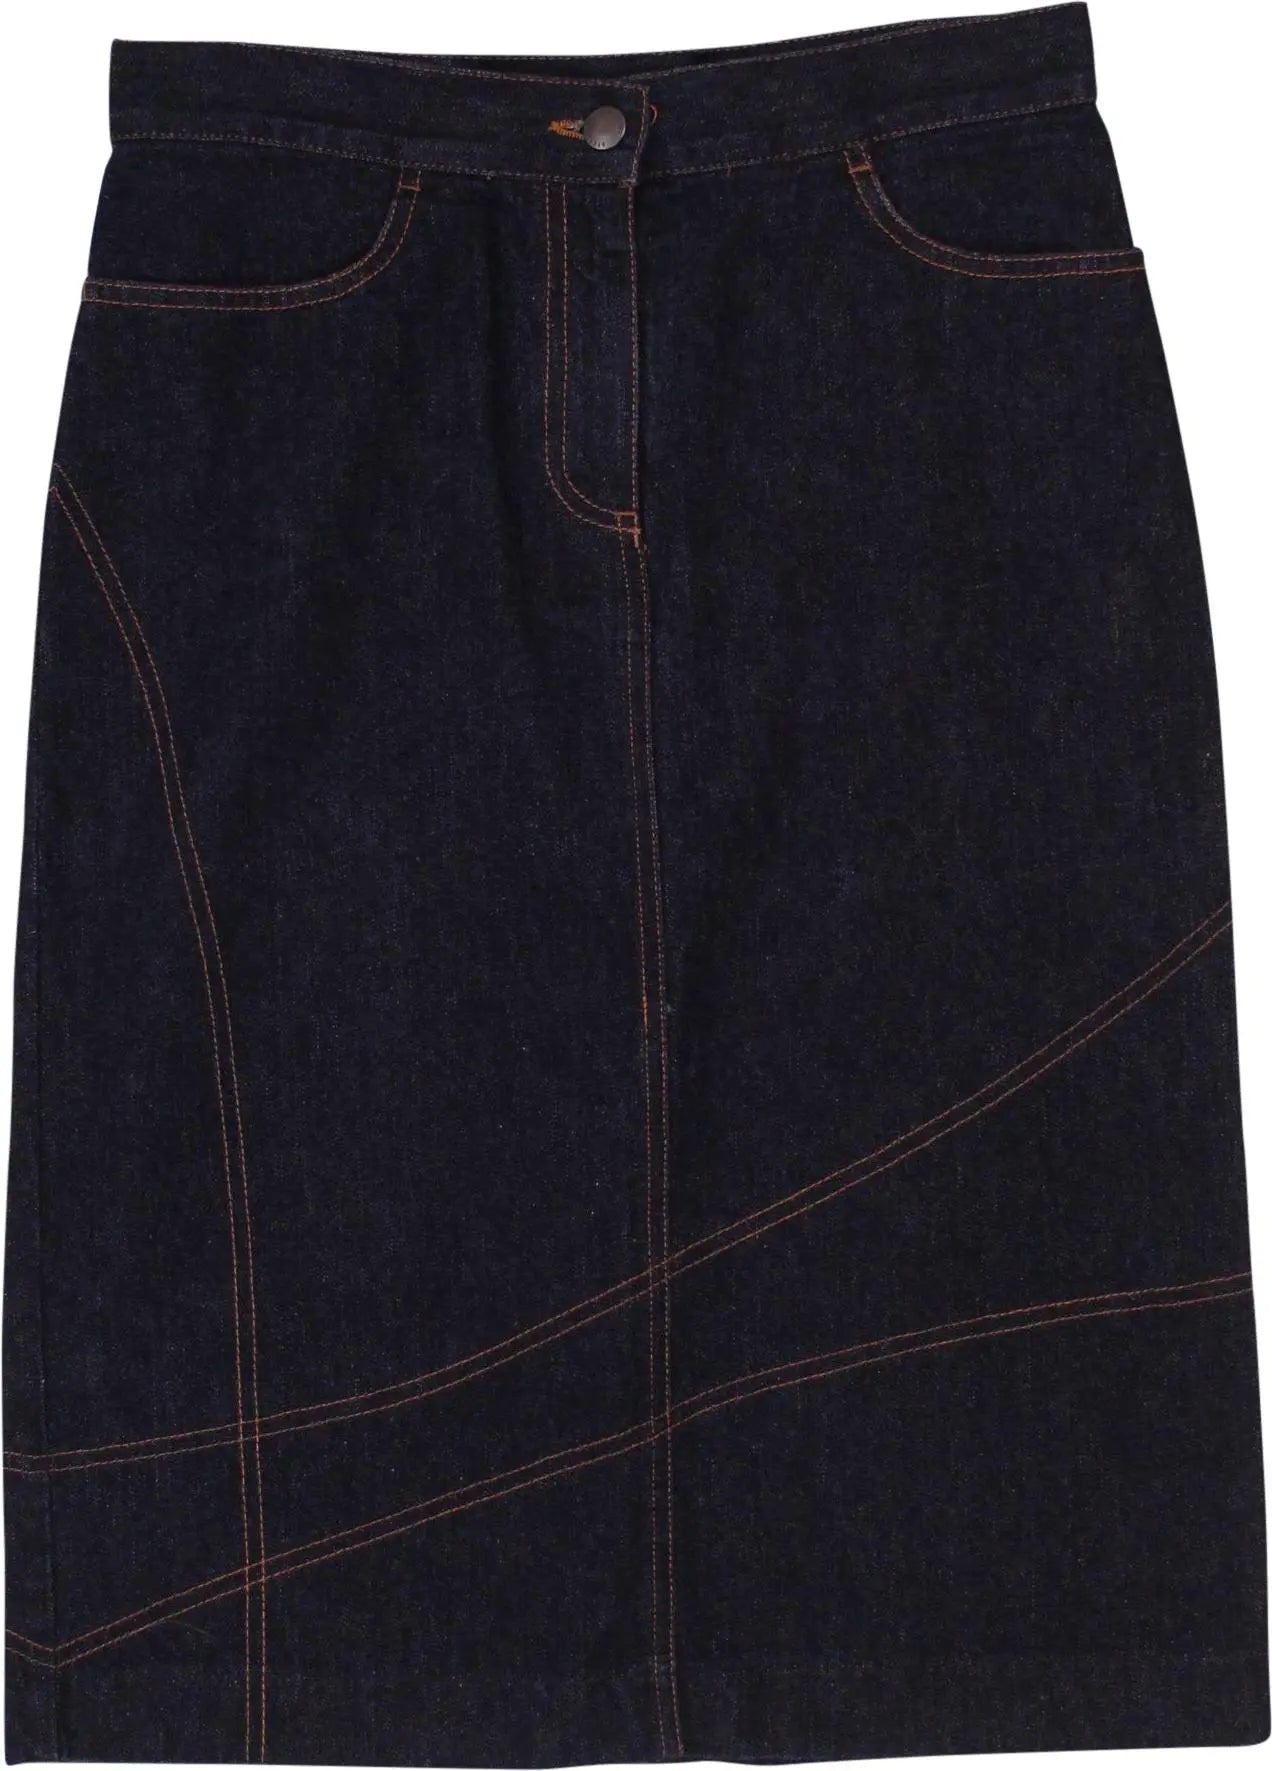 Stefanel - Dark Blue Denim Skirt- ThriftTale.com - Vintage and second handclothing